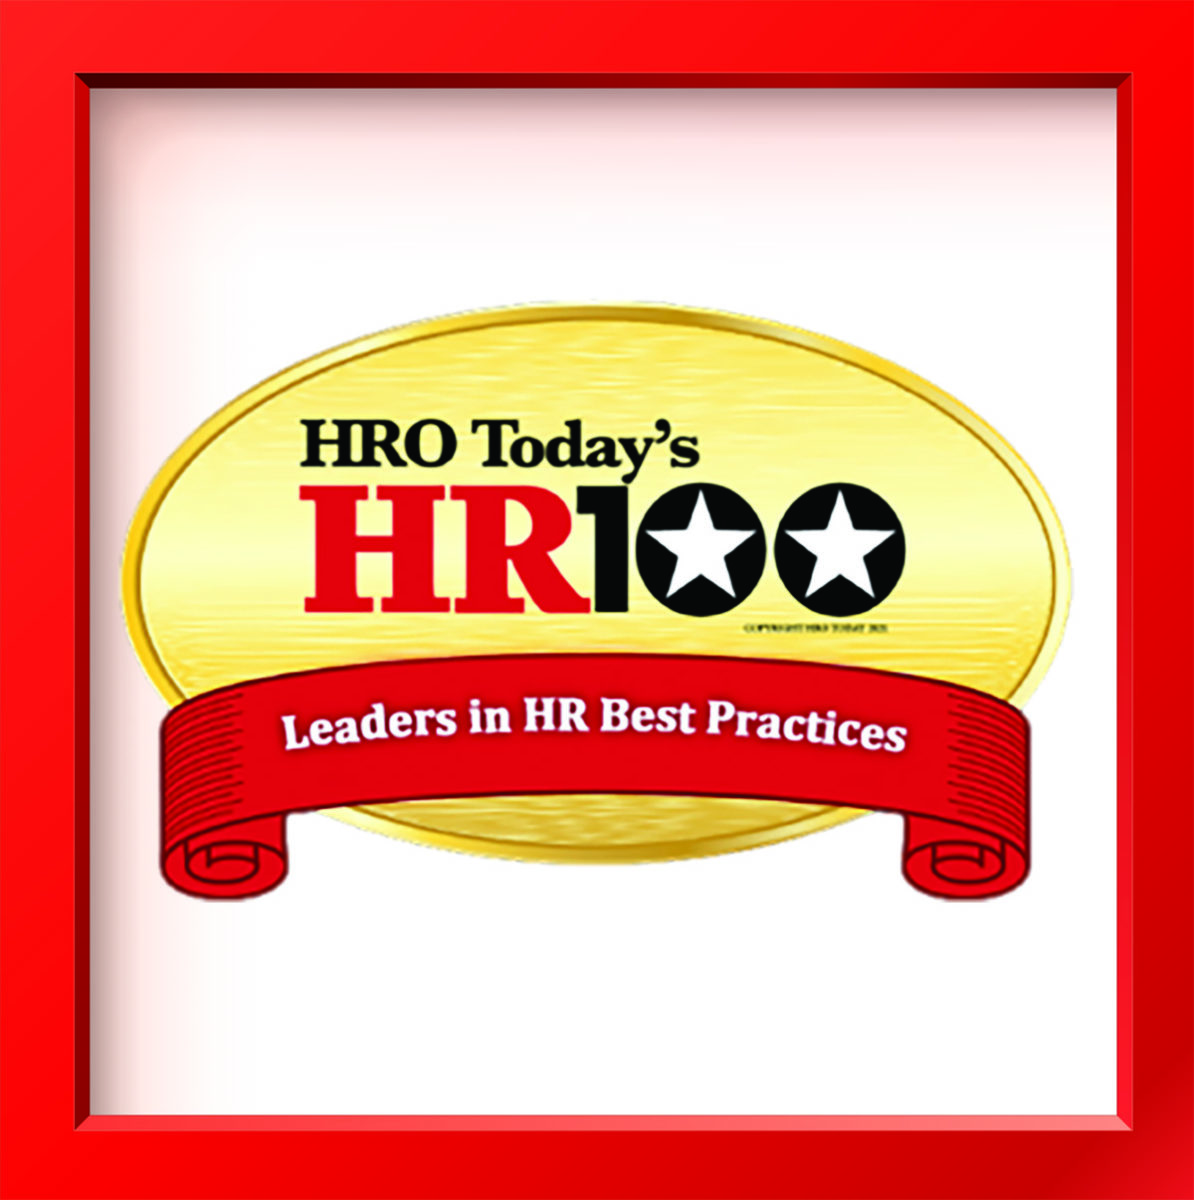 HR100: The Top Teams in HR [Video]